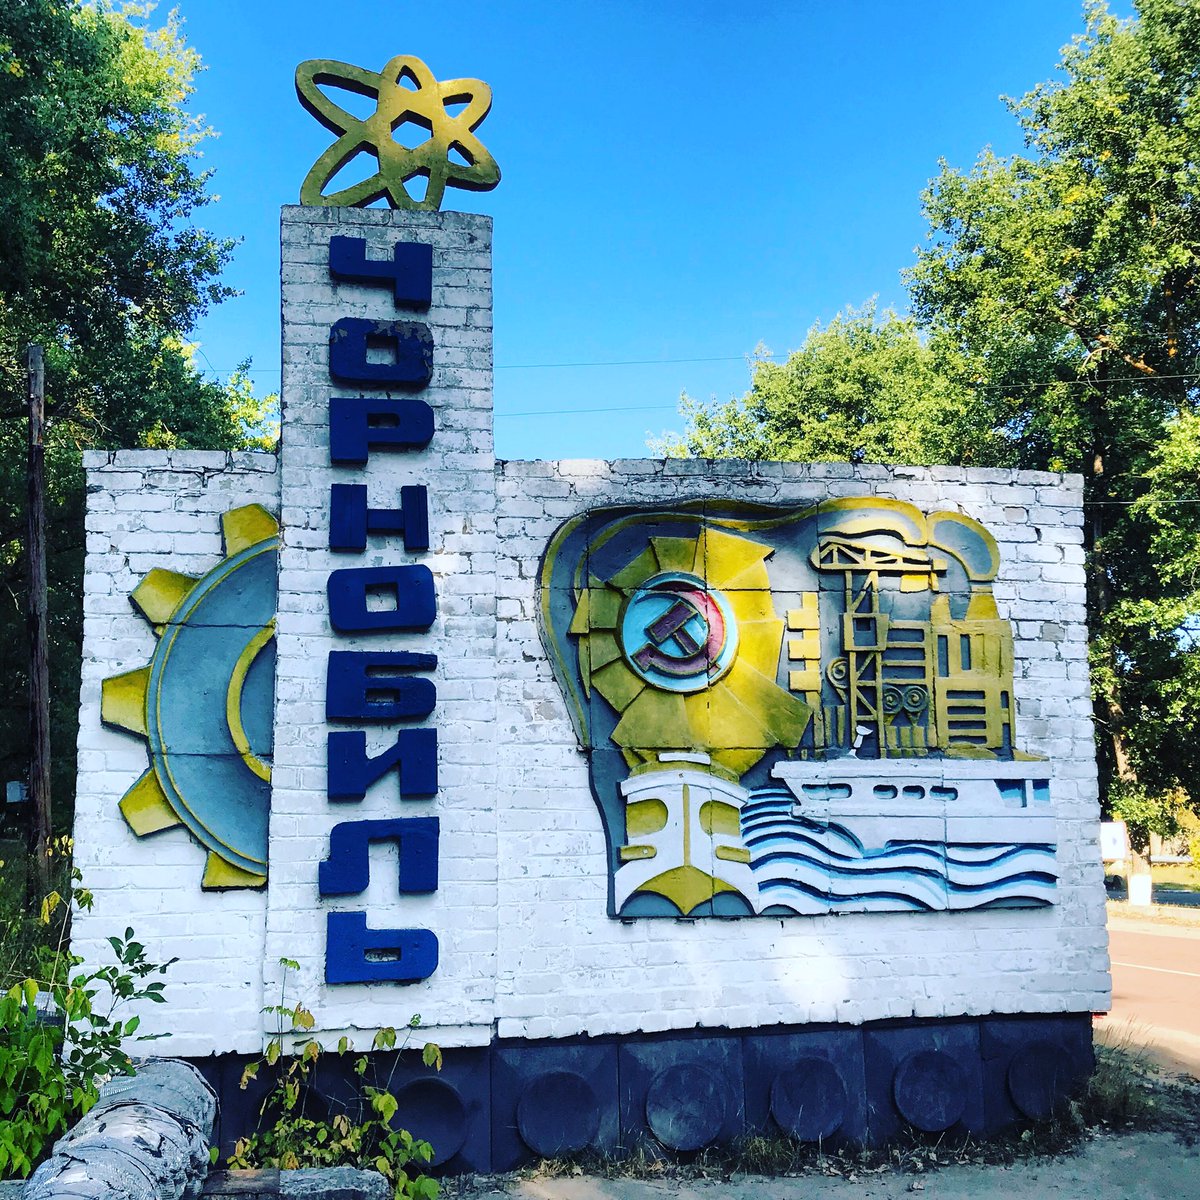 Nous repartons de Tchernobyl, en passant devant le panneau d’entrée de la localité.  #Tchernobyl  (Plus de photos:  http://Instagram.com/nashtagstagram )